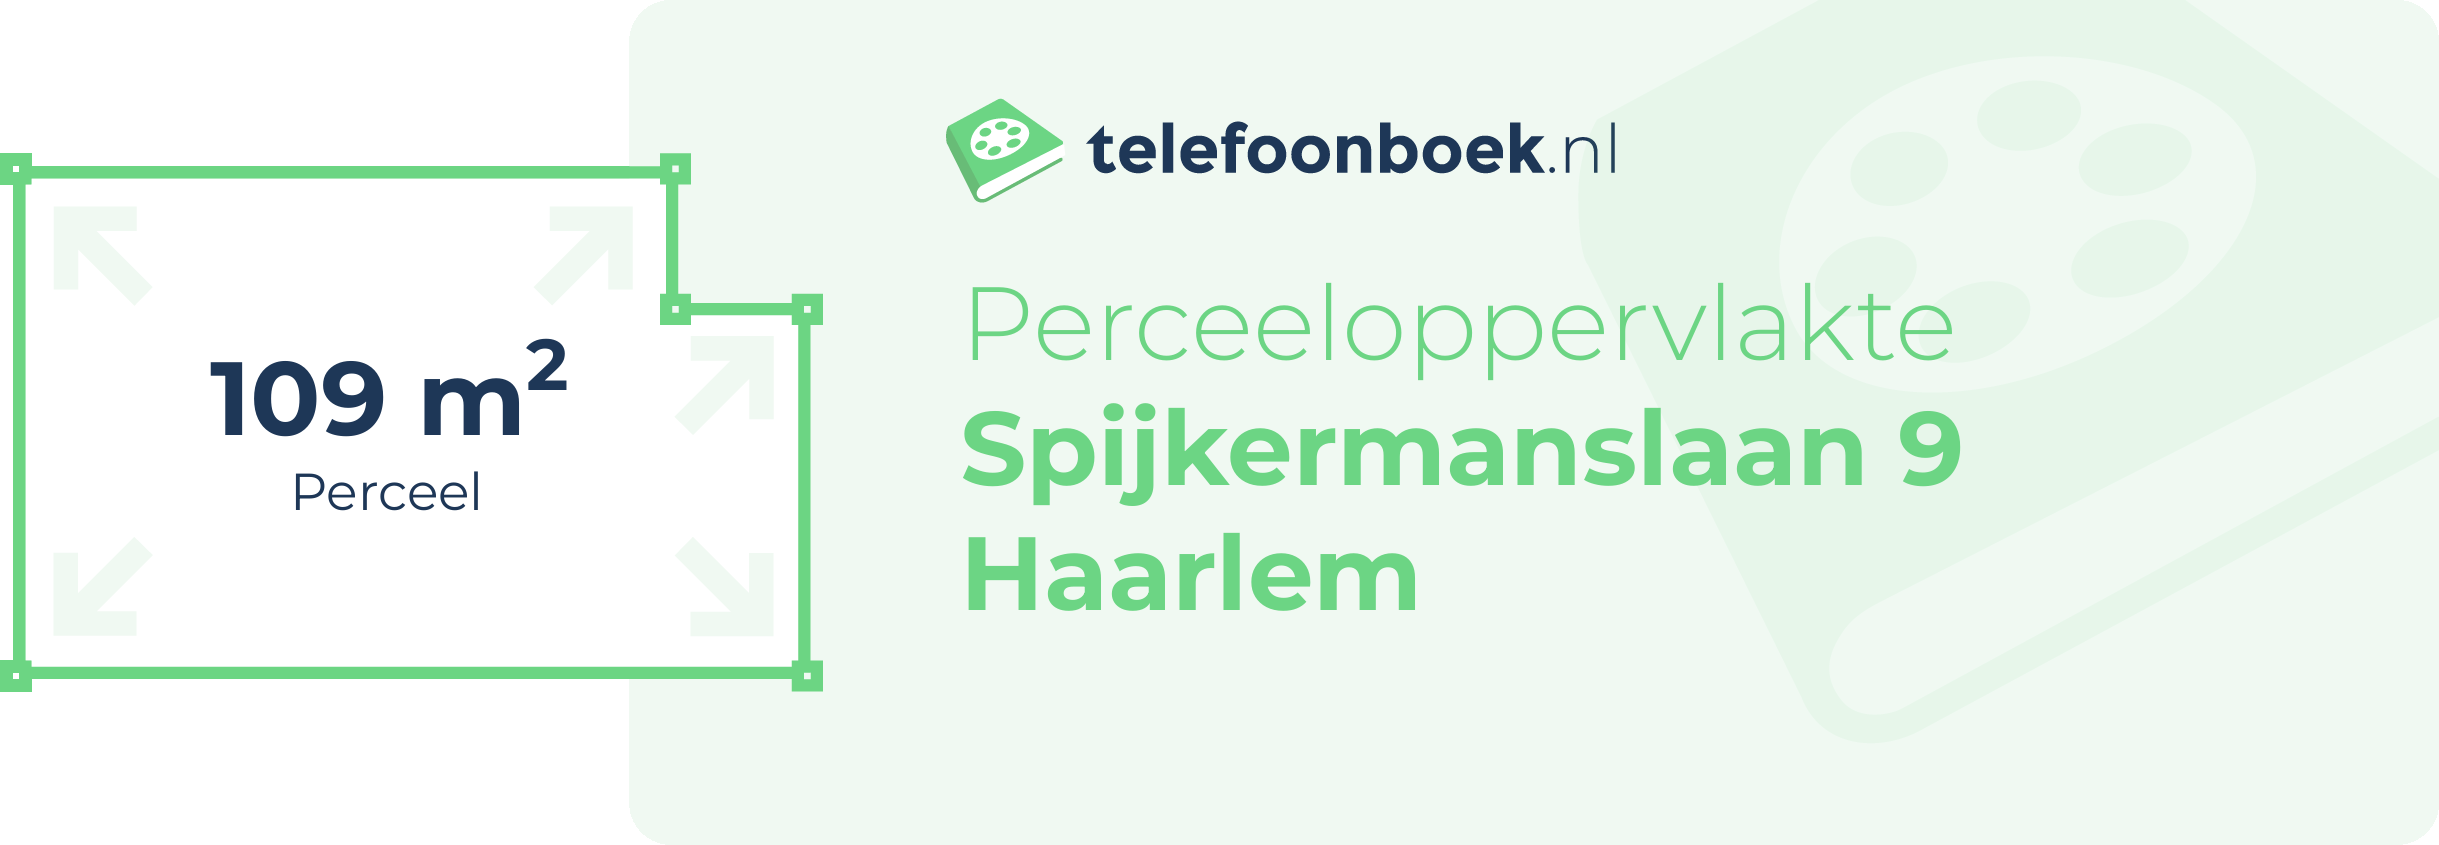 Perceeloppervlakte Spijkermanslaan 9 Haarlem